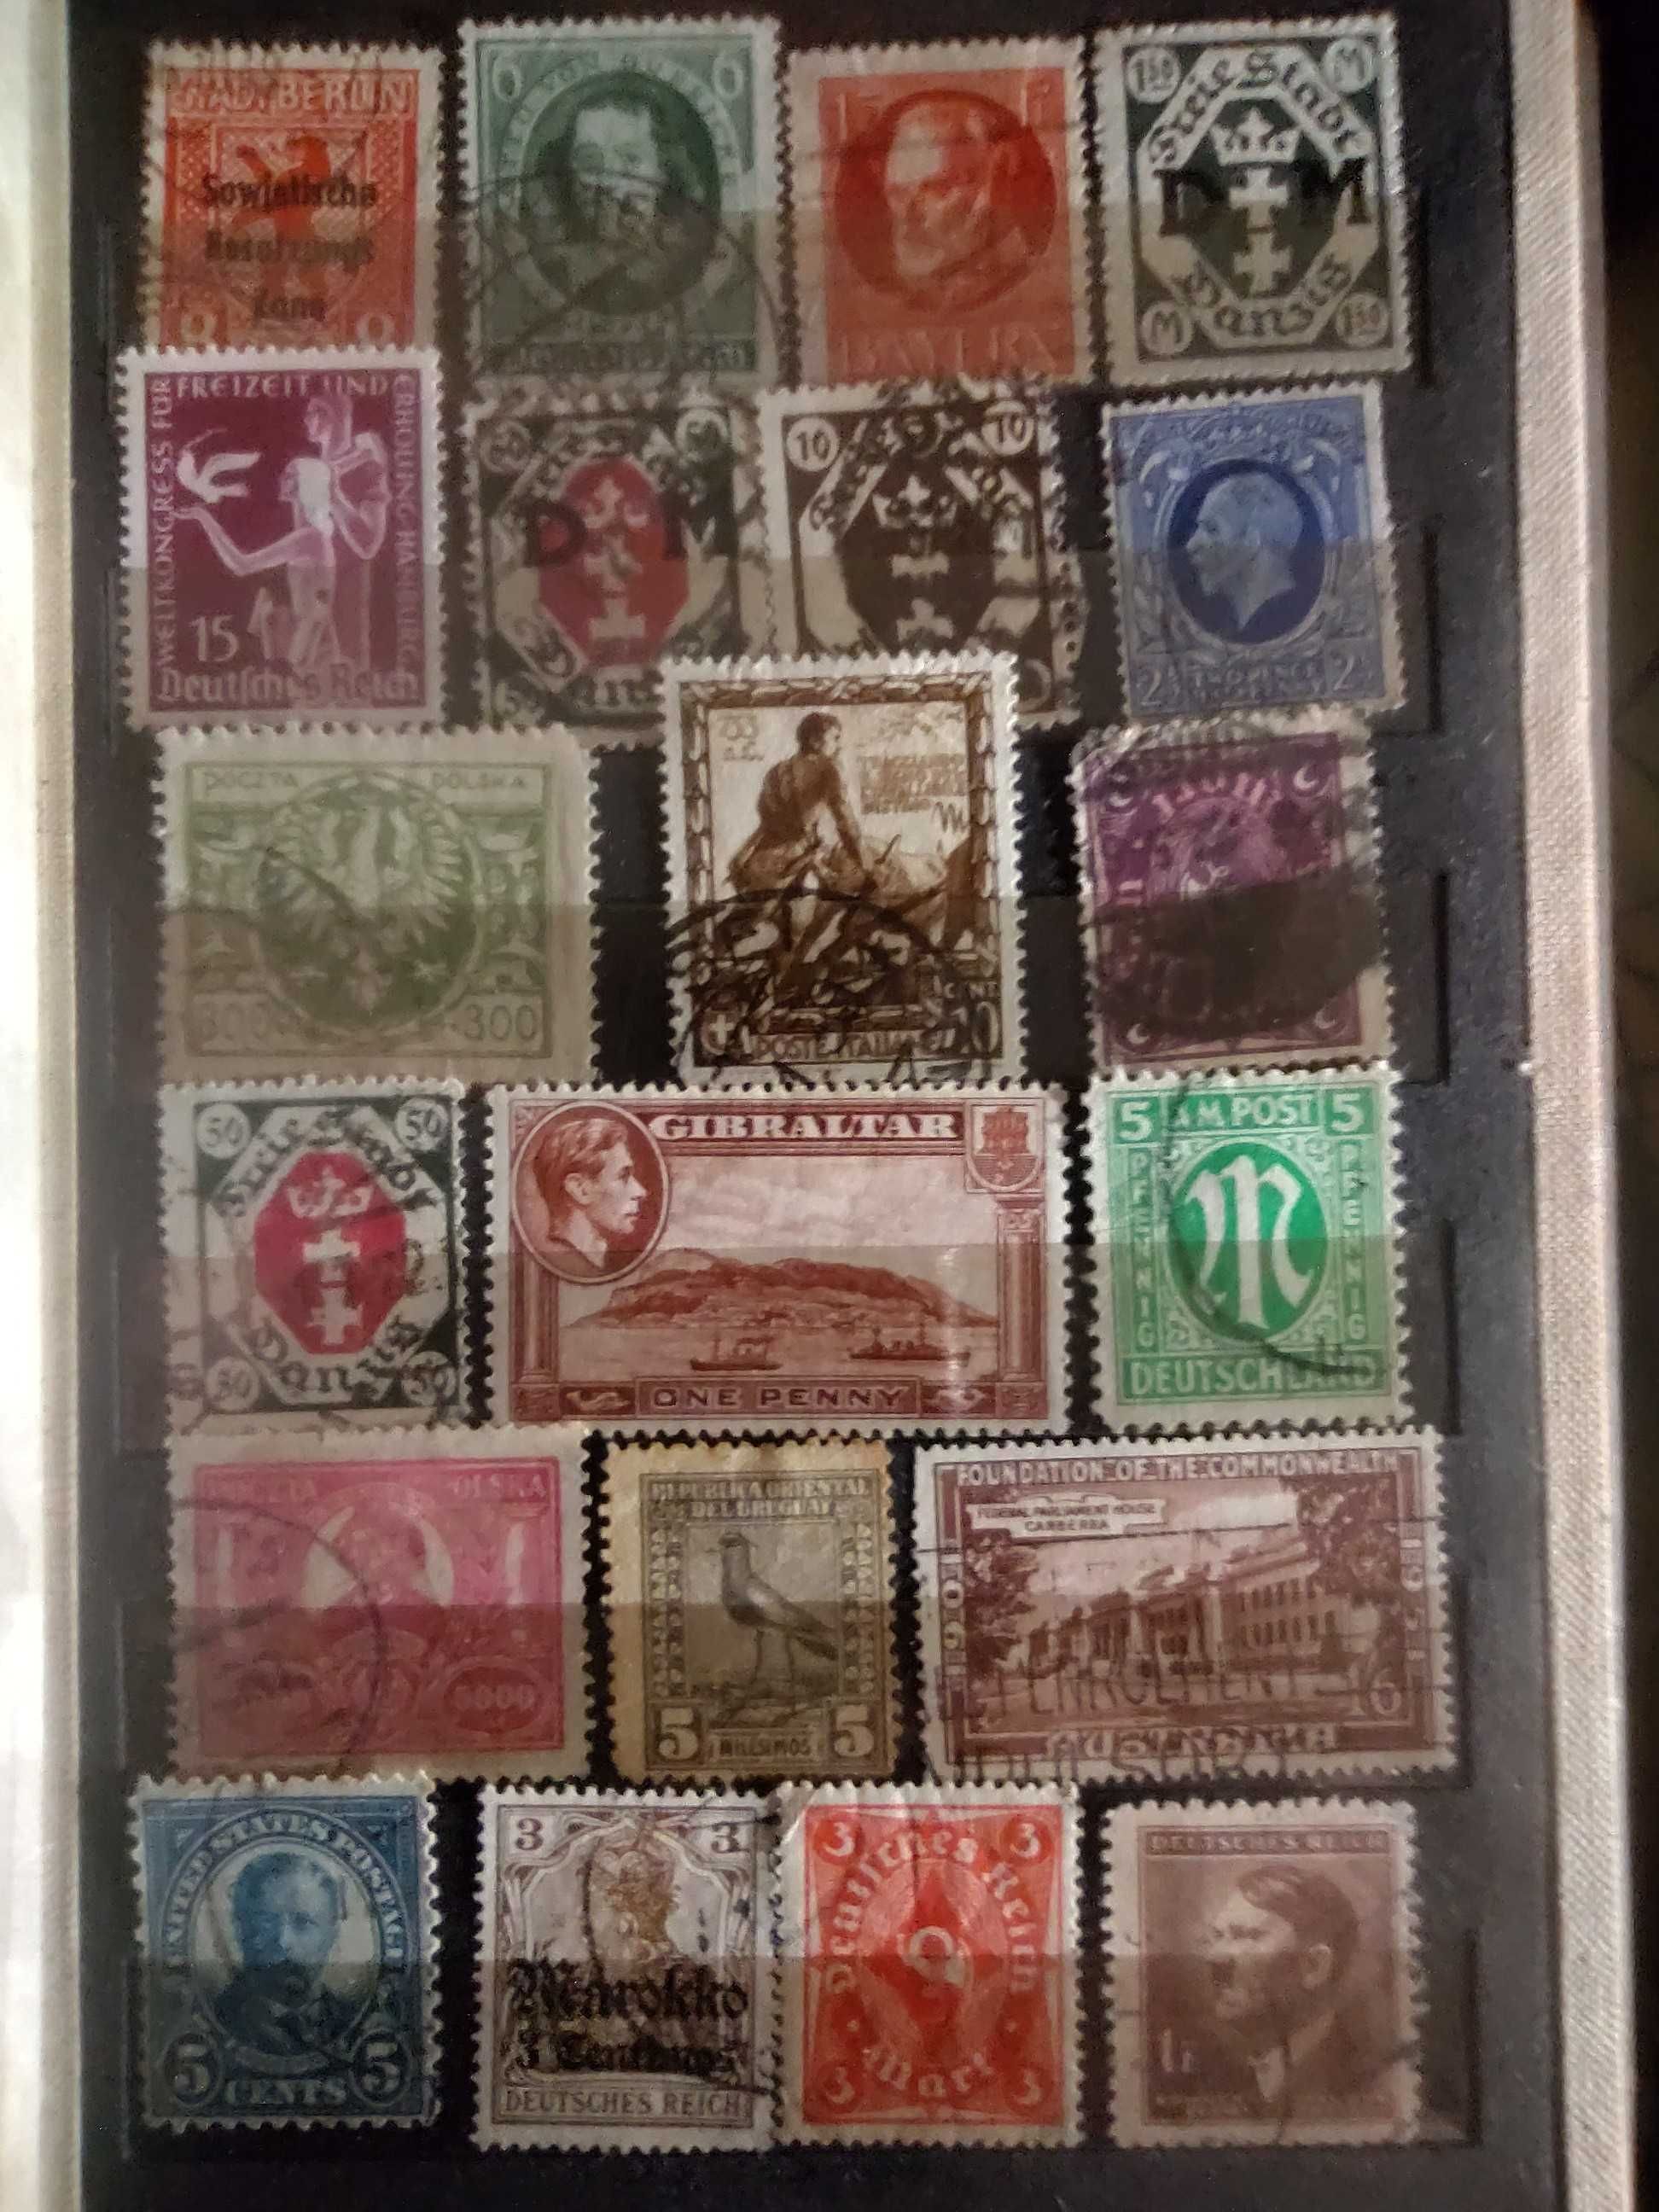 Klaser ze znaczkami starymi do 1944